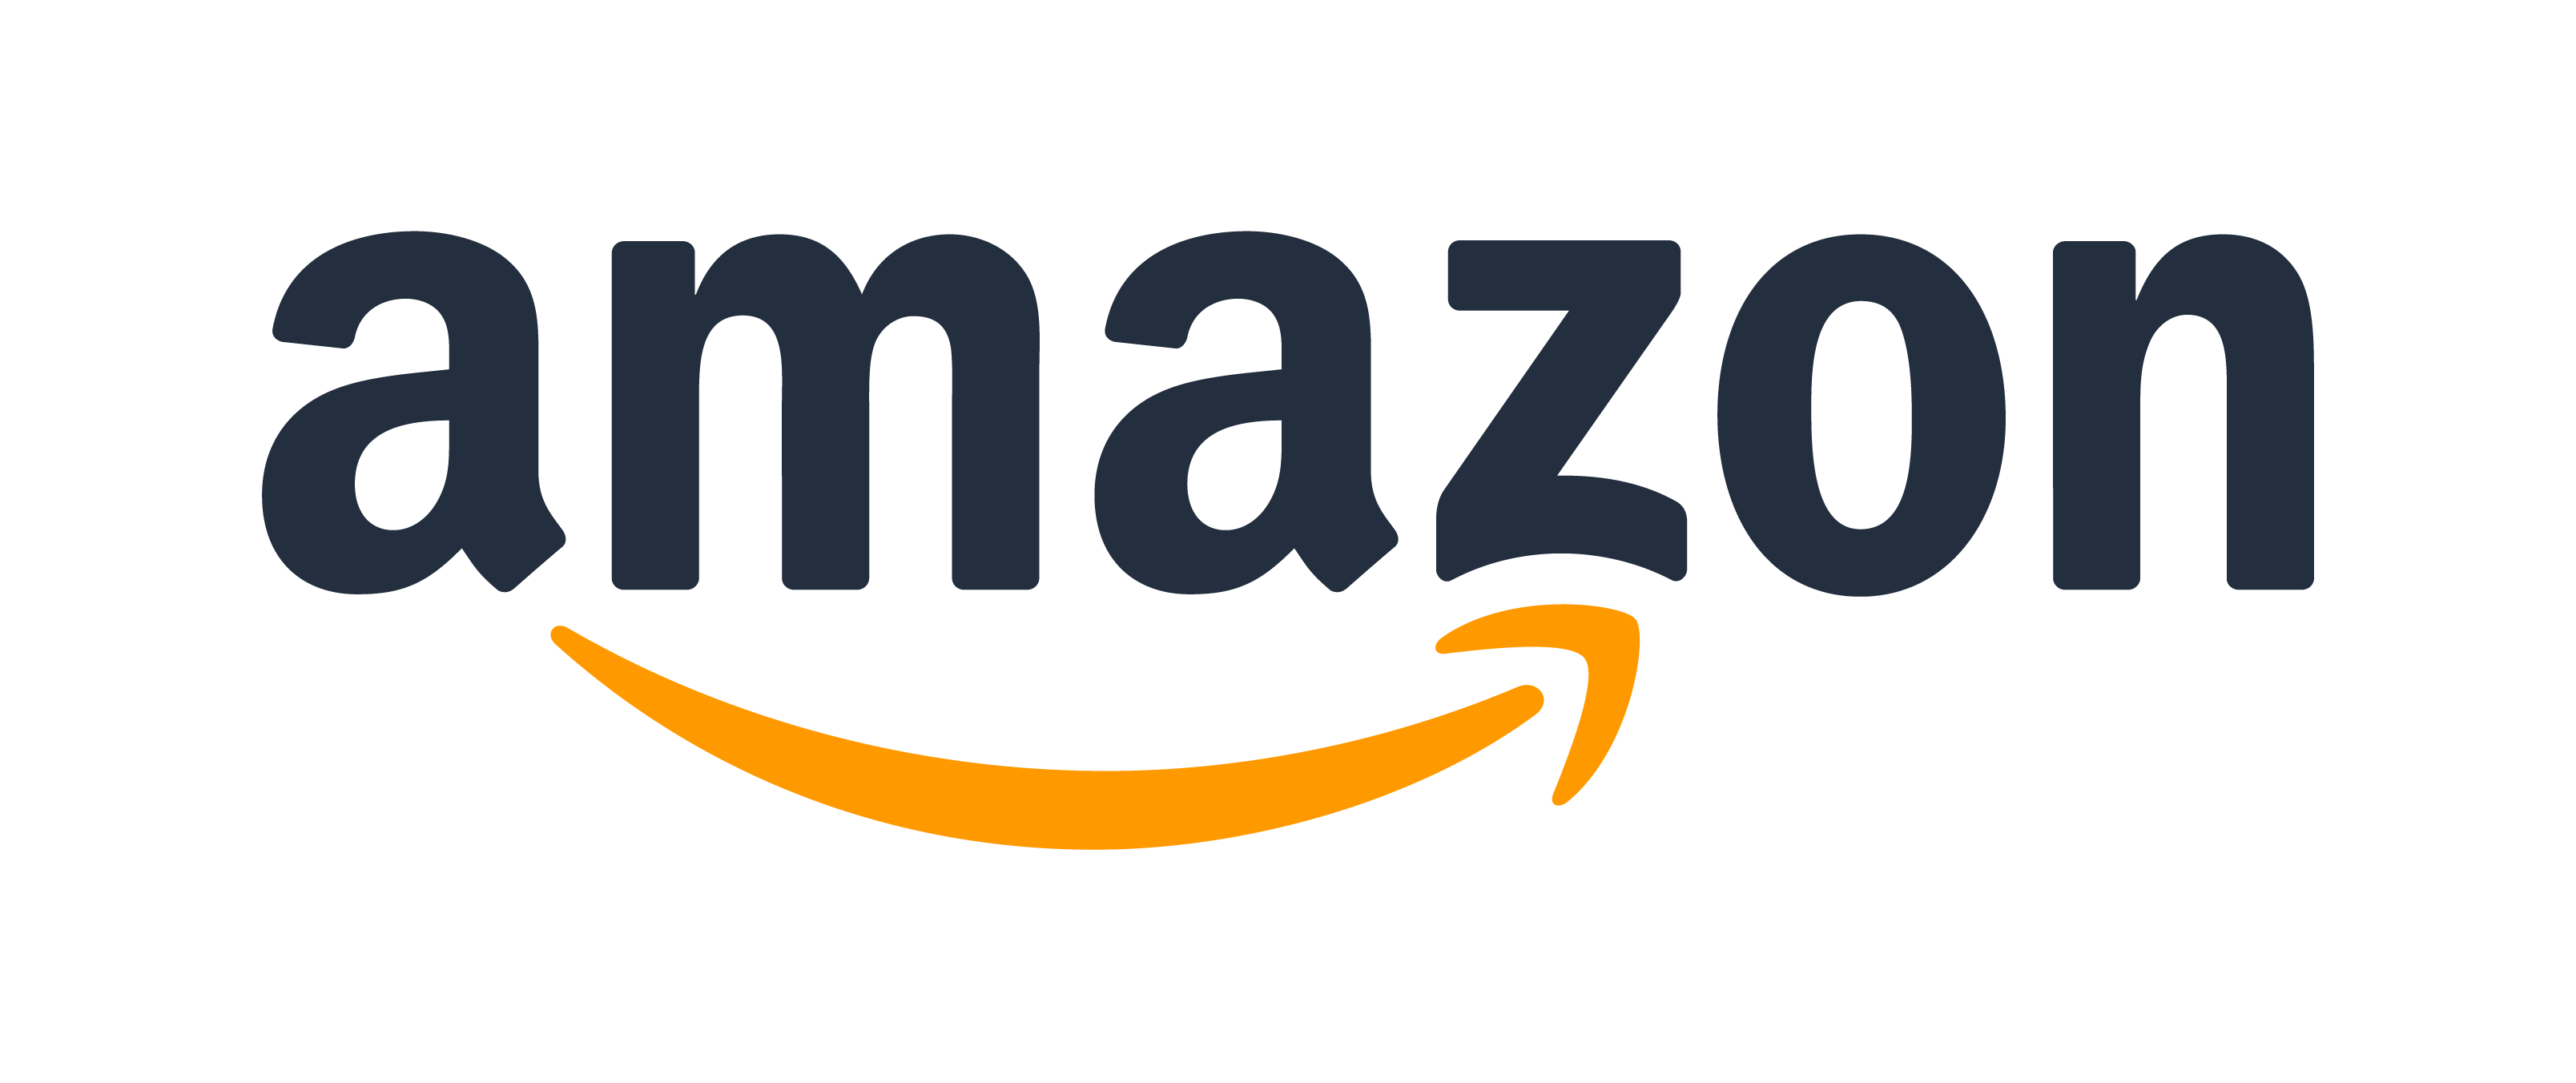 Amazon představil výsledky nad očekávání, Jeff Bezos opouští místo  výkonného ředitele | Fio banka